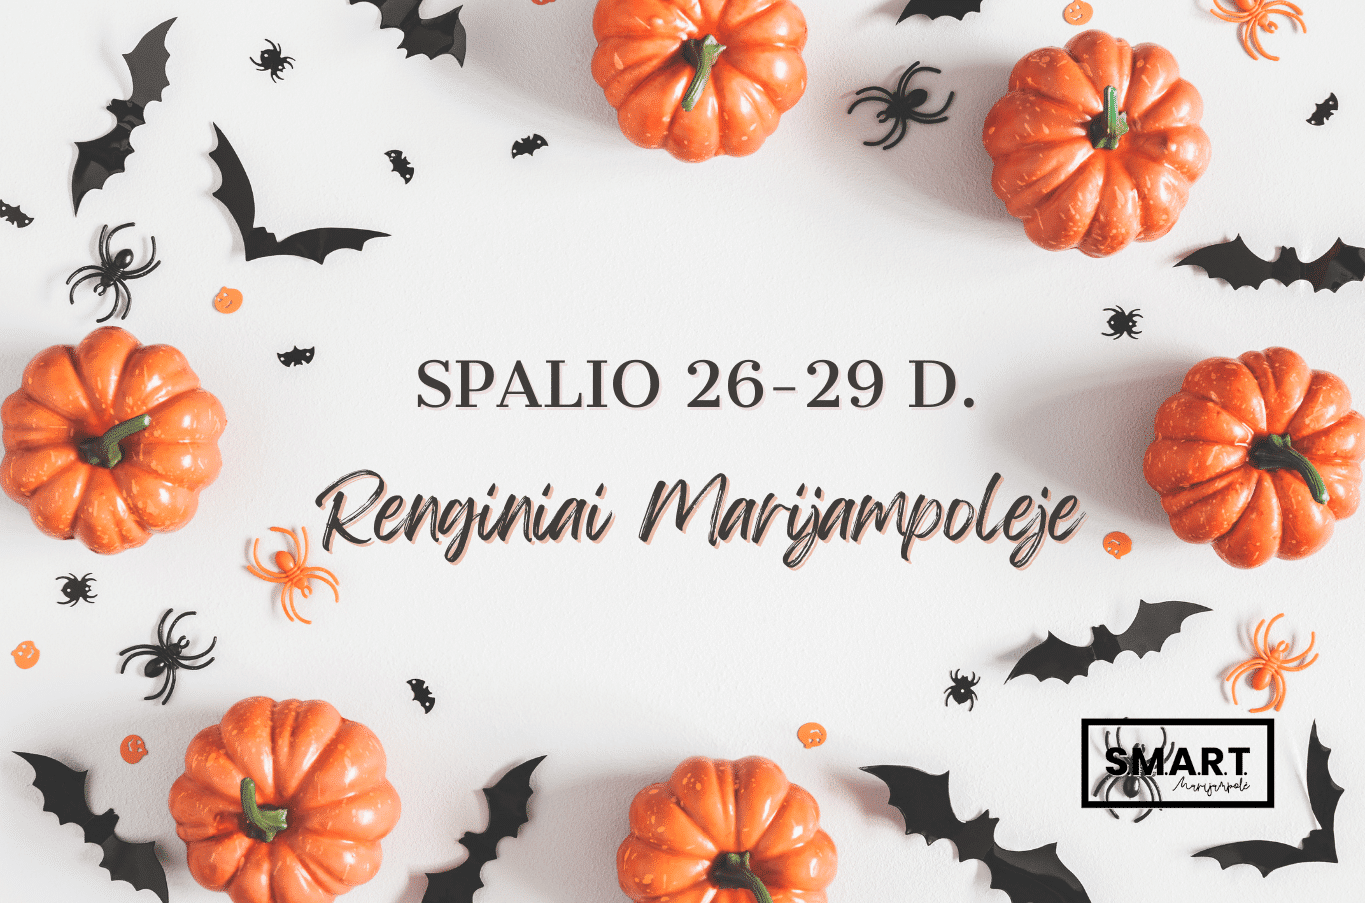 You are currently viewing Savaitgalio renginiai Marijampolėje | 10.26-10.29